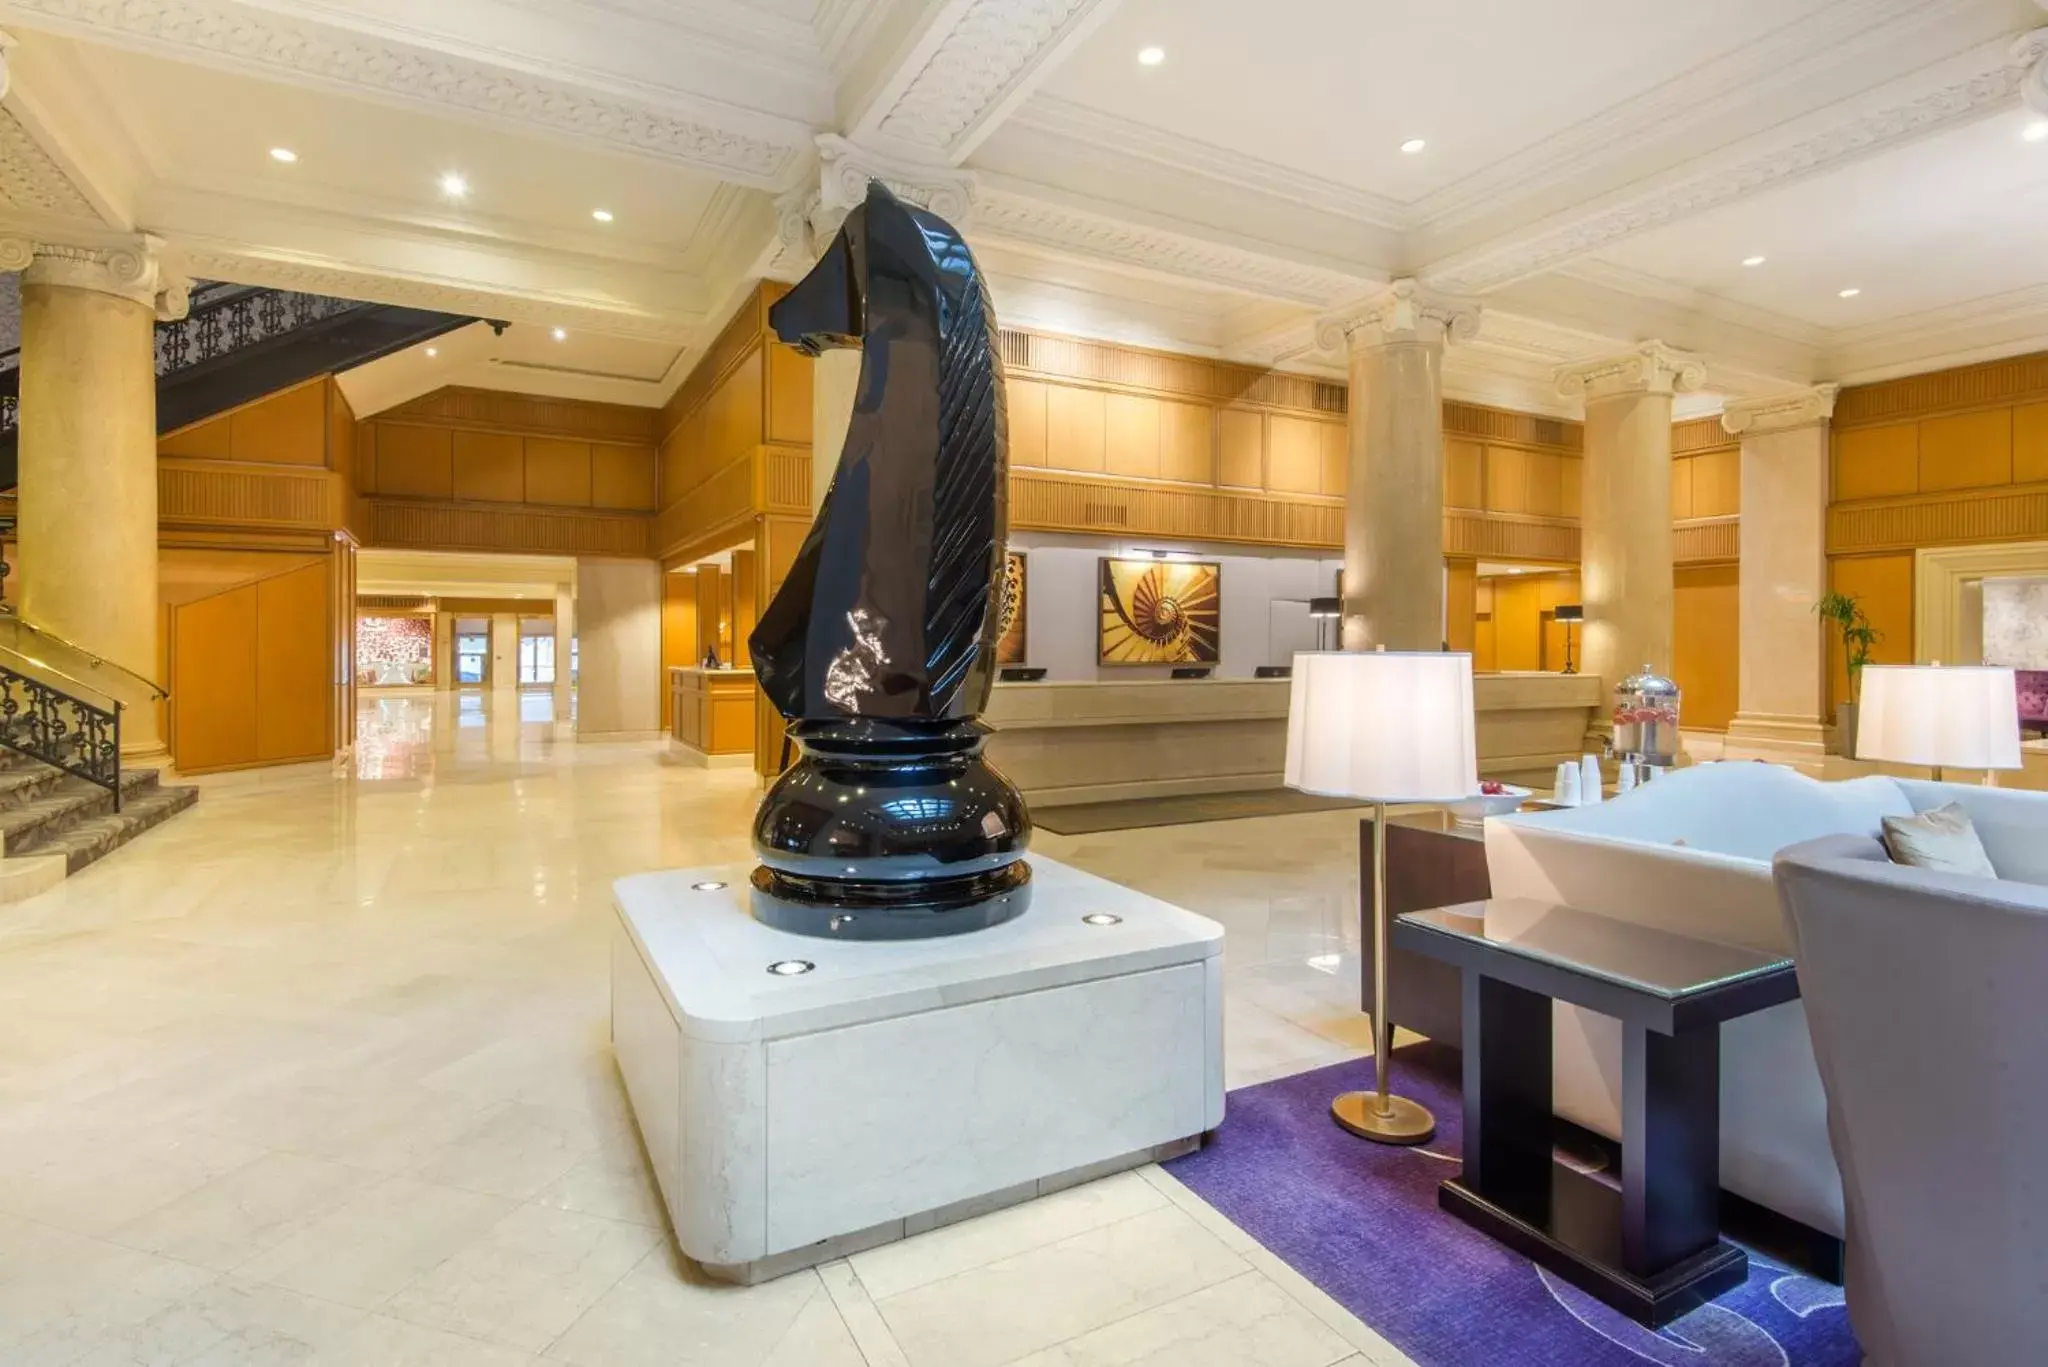 Lobby or reception in The Omni King Edward Hotel